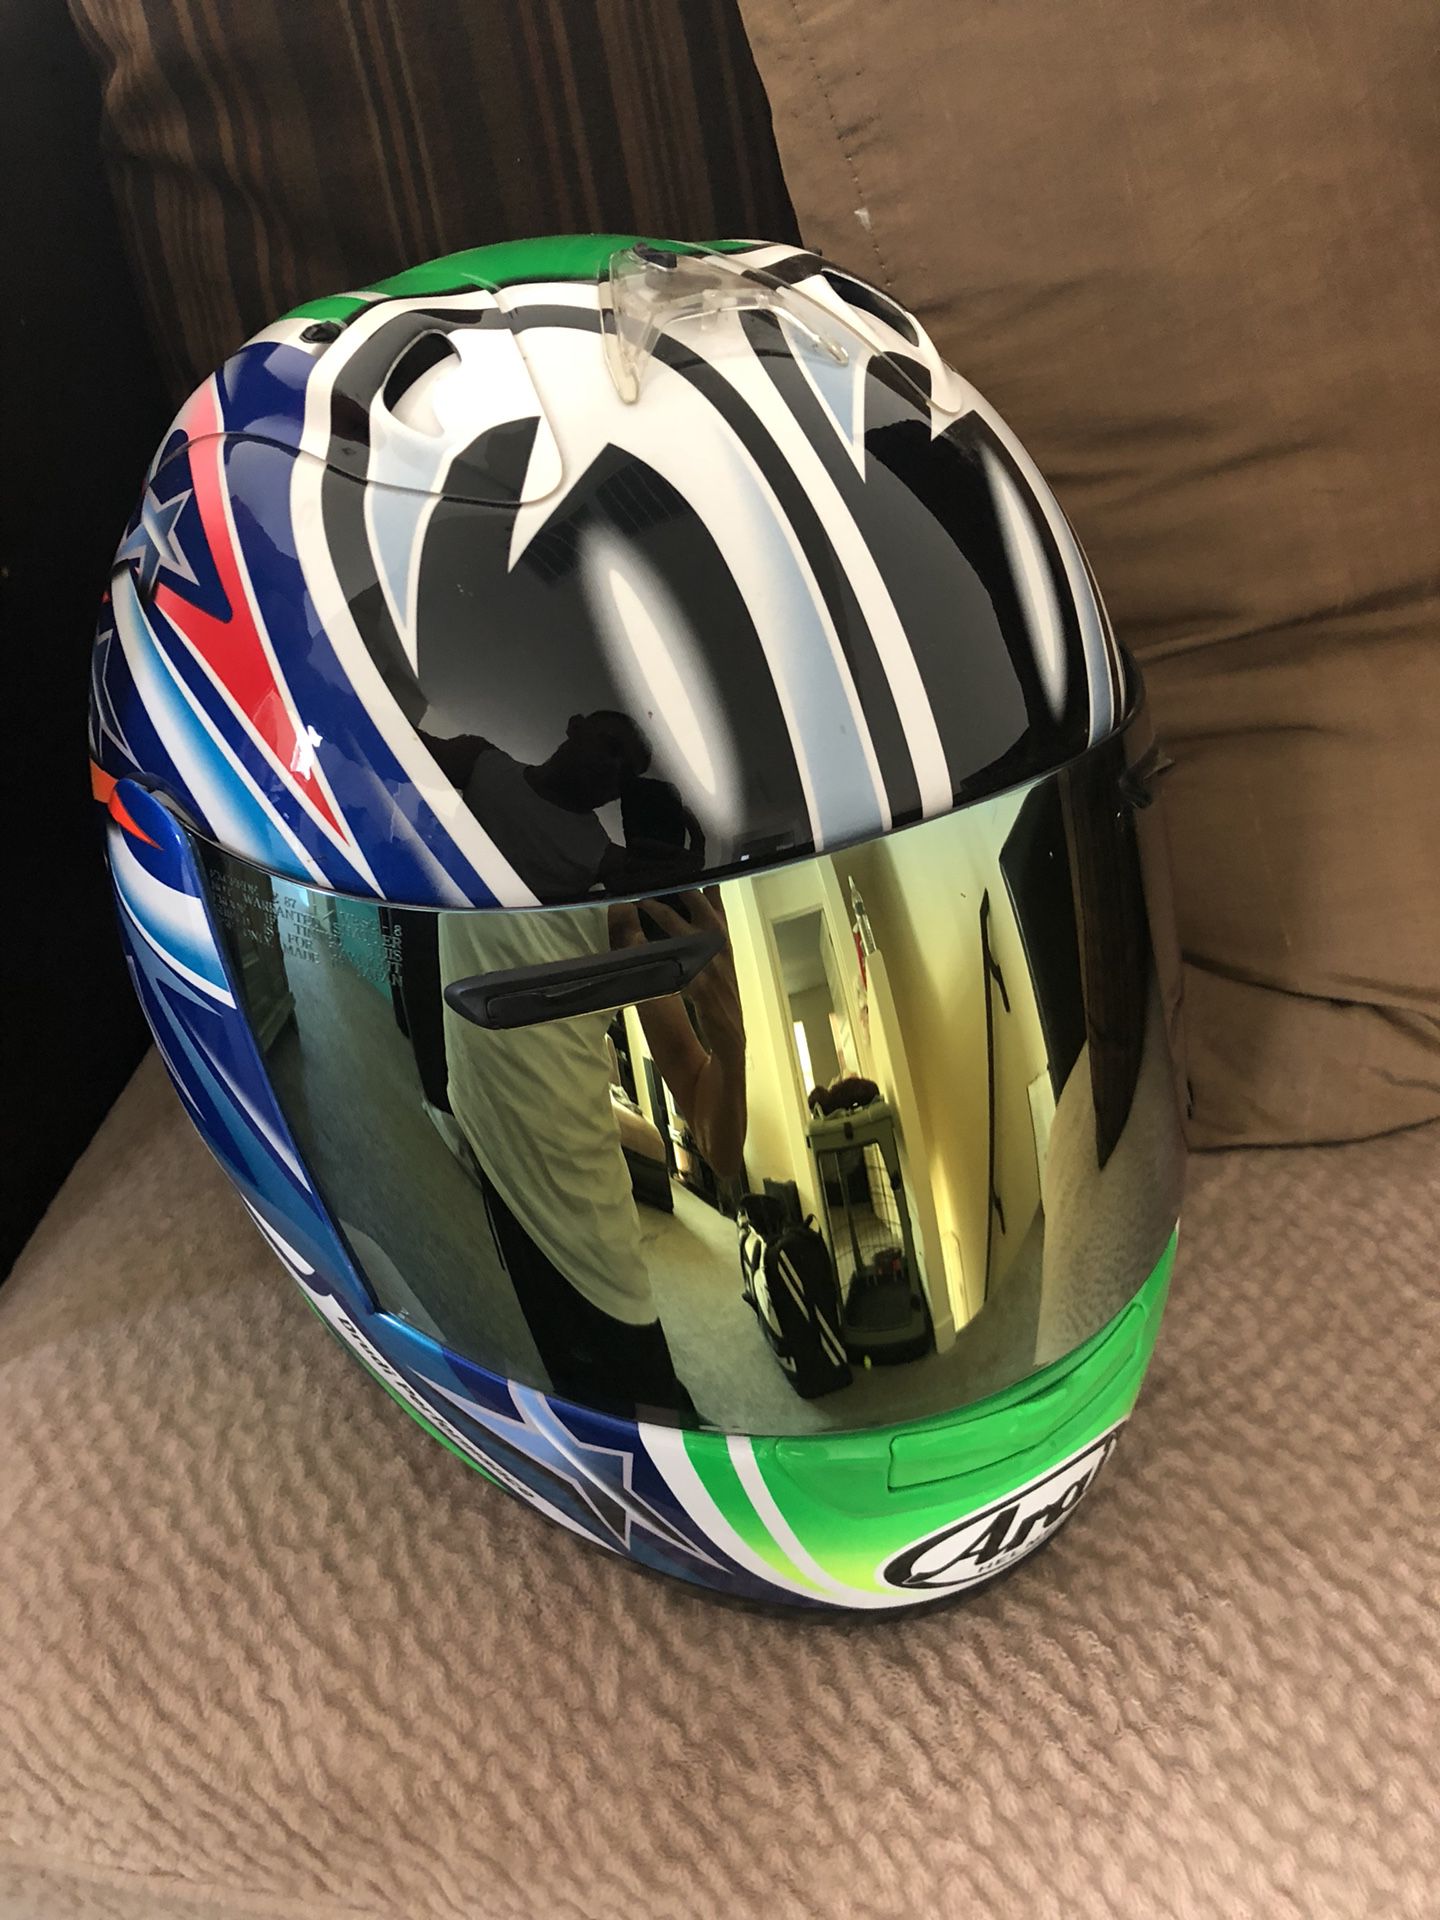 Arai Rx-7rr5 Nakano Helmet very rare for Sale in Gilbert, AZ - OfferUp